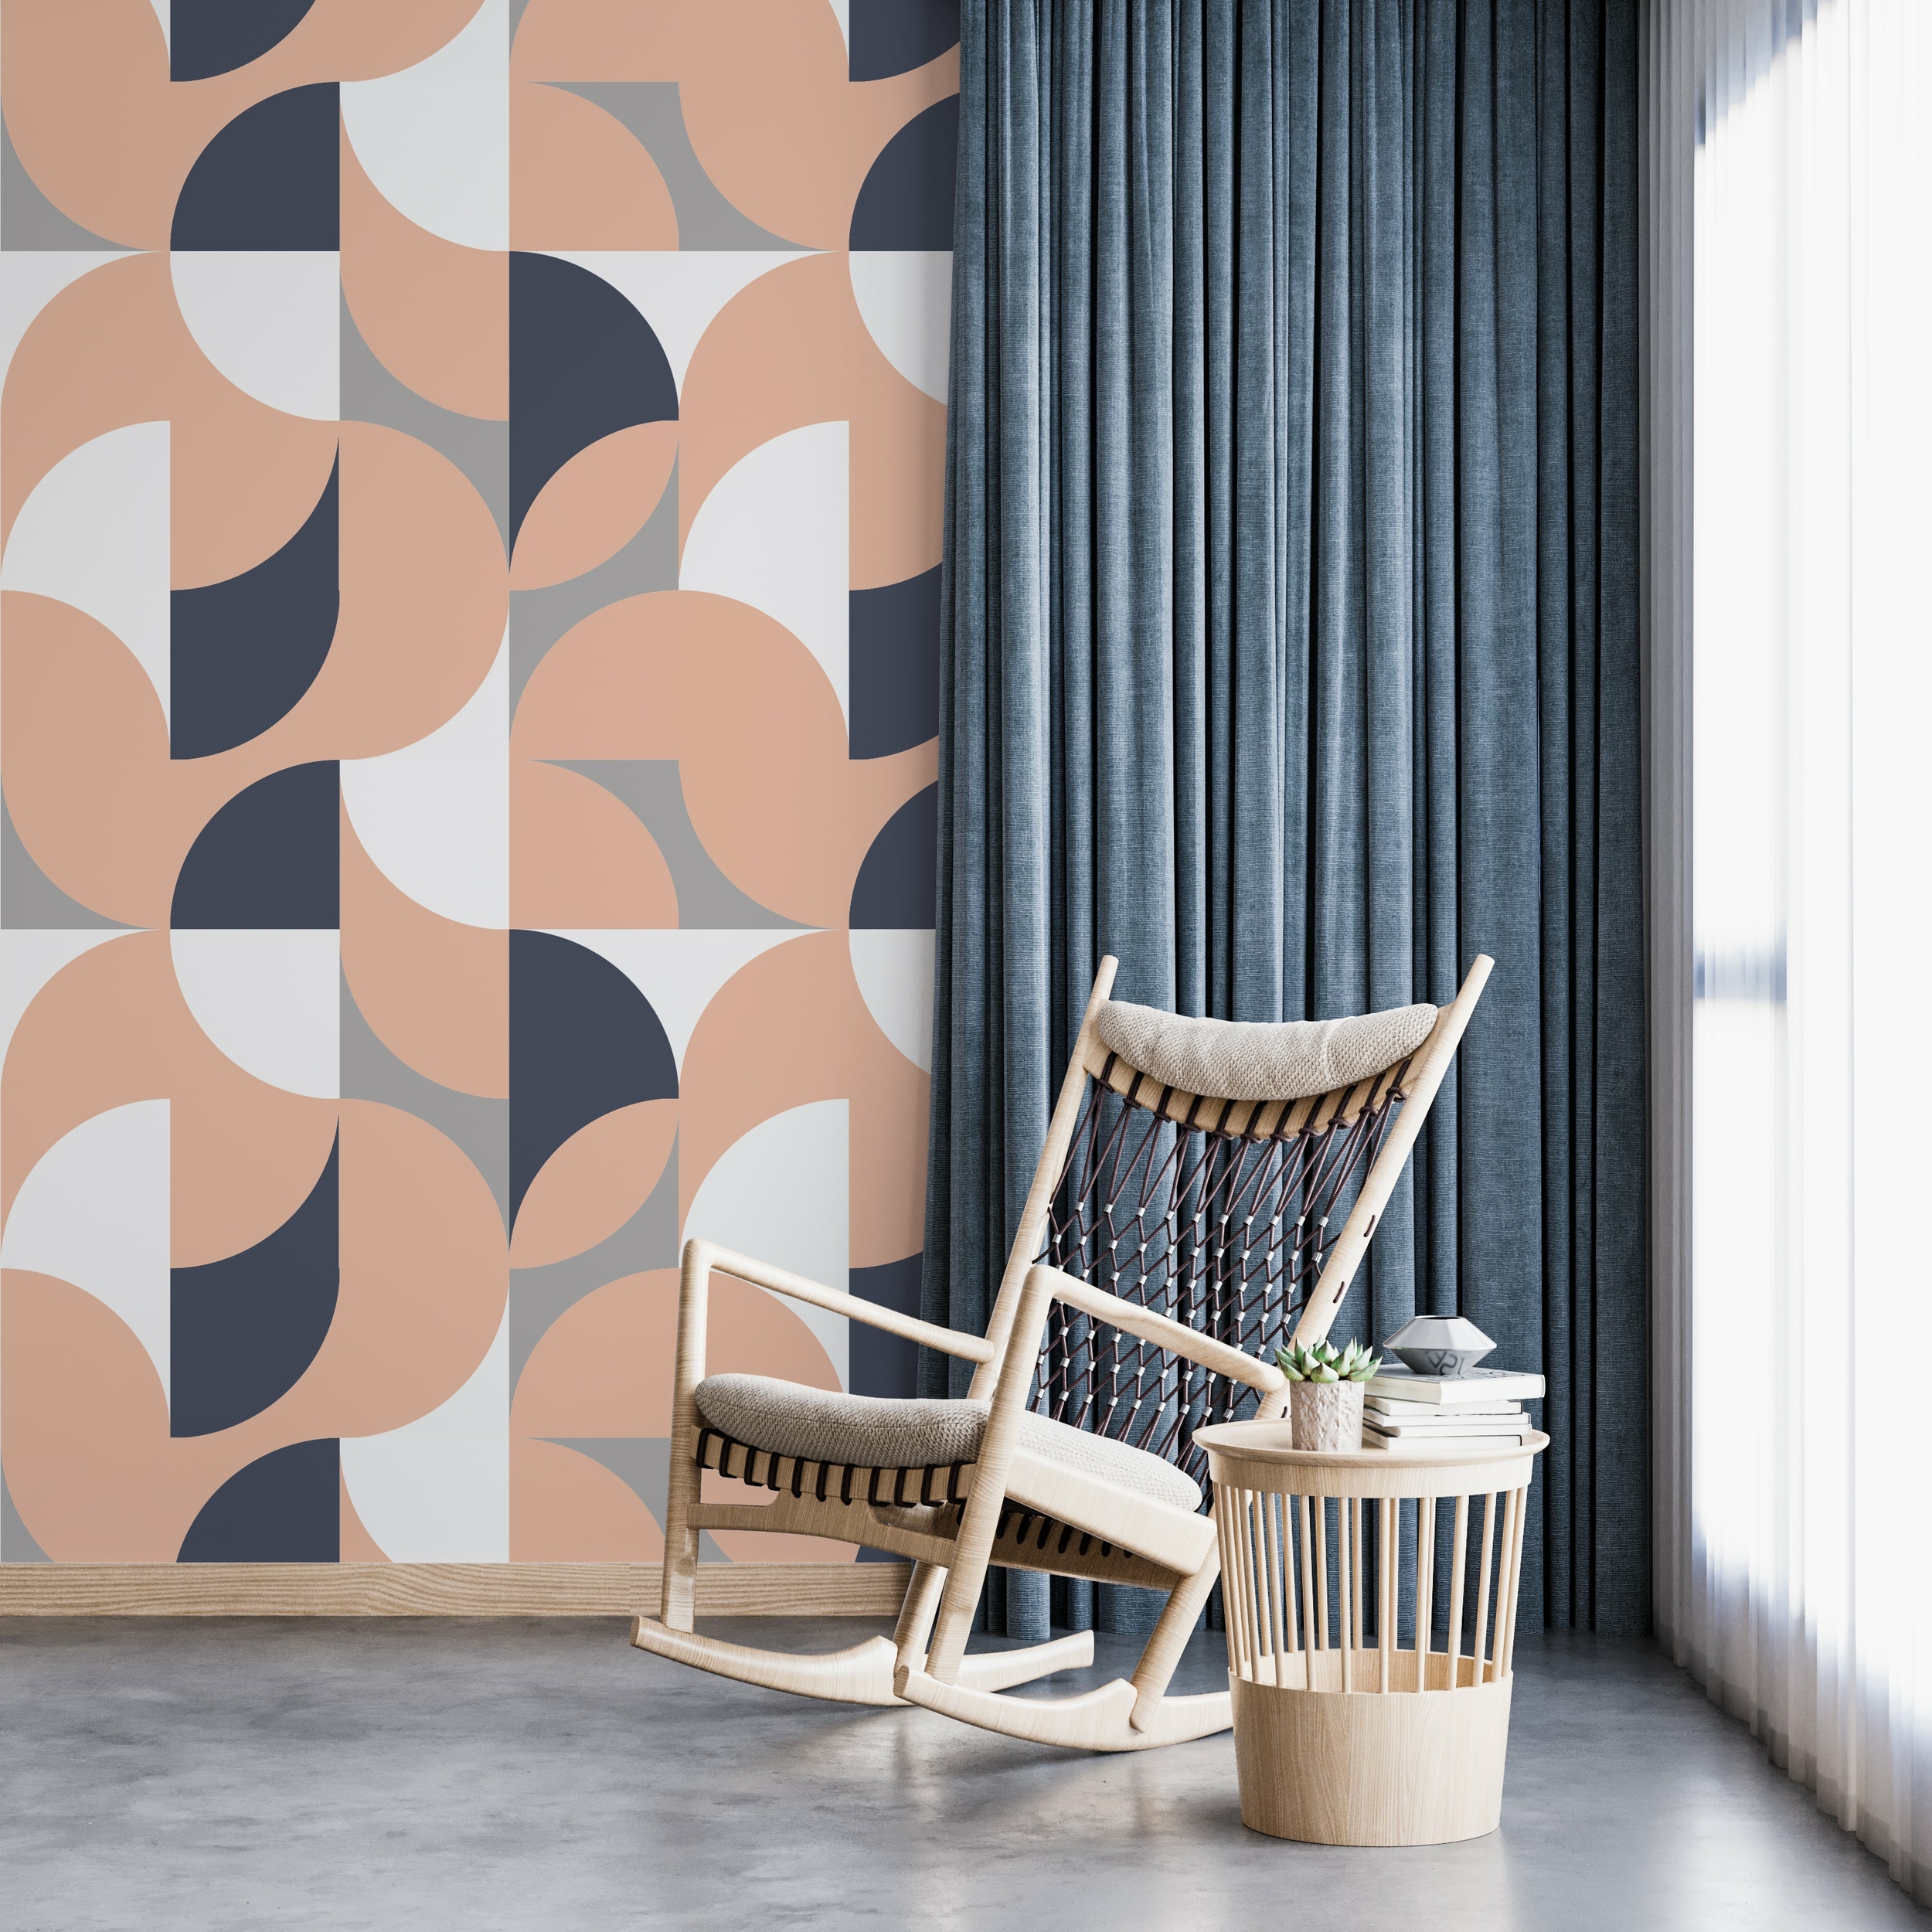 PP46-mur-papier-peint-adhesif-decoratif-revetement-vinyle-formes-géométriques-aléatoires-2-renovation-meuble-mur-min